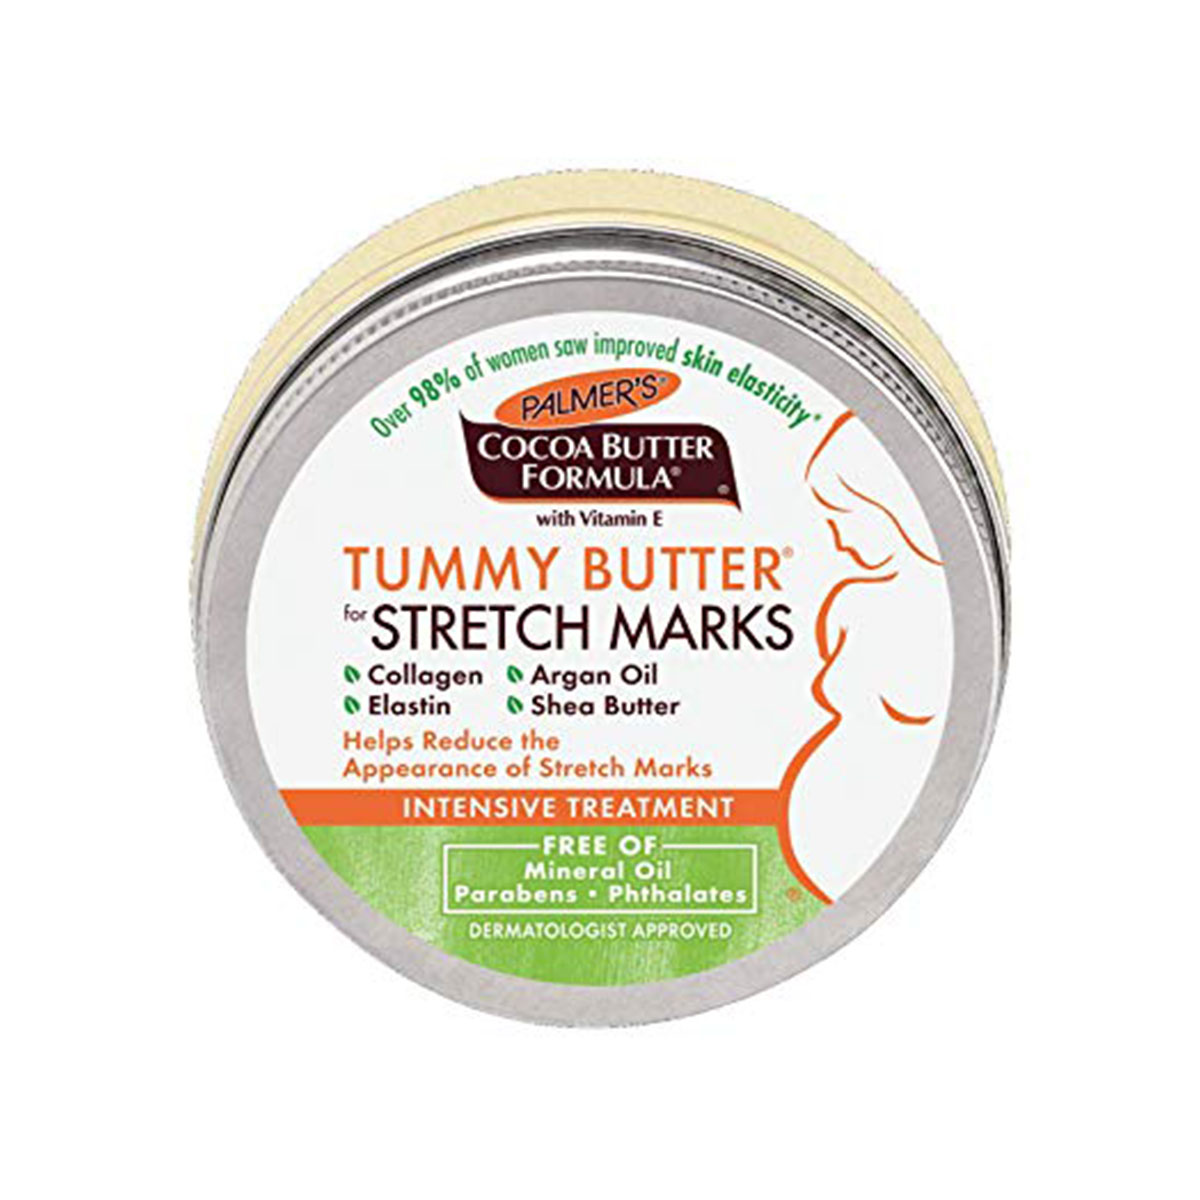 Bơ đậm đặc ngăn ngừa rạn da từ tháng 7 đến cuối thai kỳ và sau sinh Palmer's Cococa Butter Tummy Butter Stretch Marks 125g + Tặng Lotion rạn dạ Palmer's 5ml